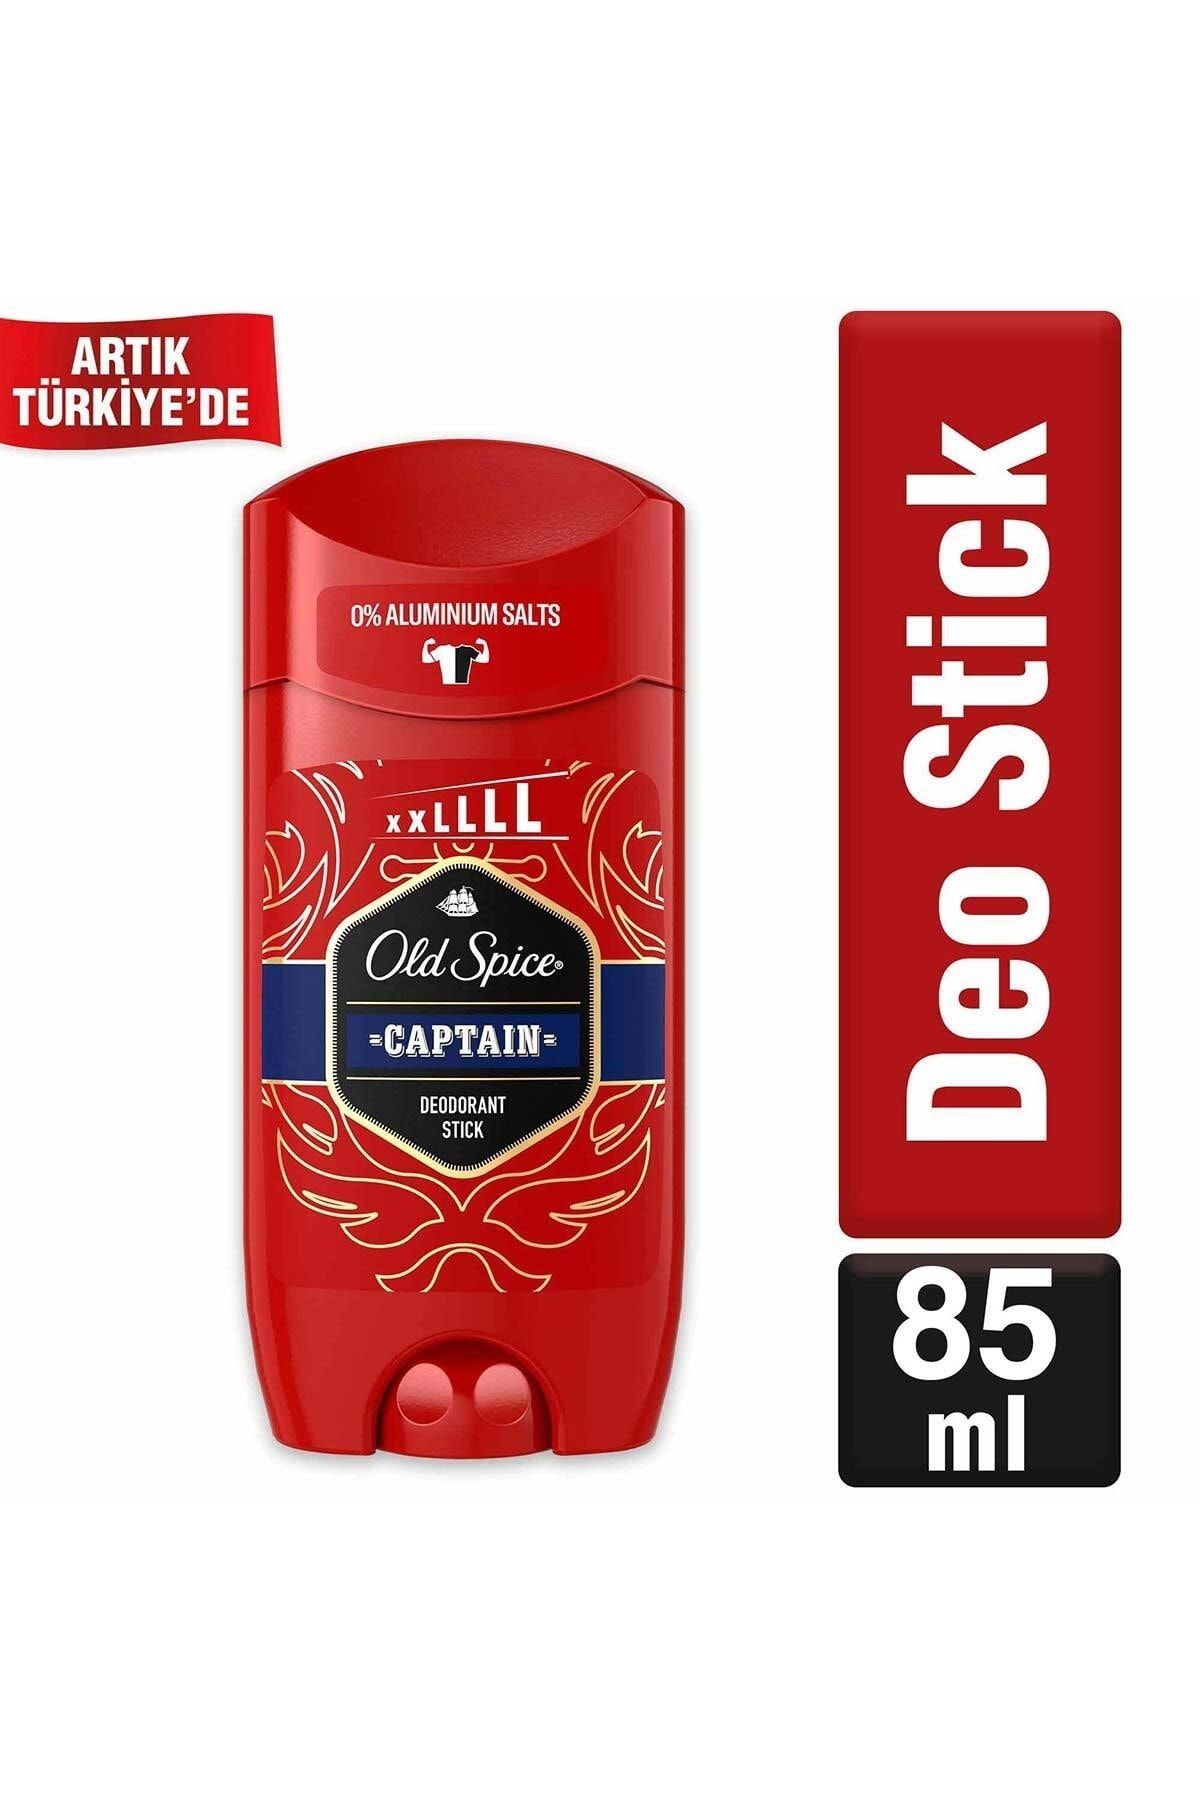 Old Spice Captain Erkekler Için Stick Deodorant 85 ml Xl